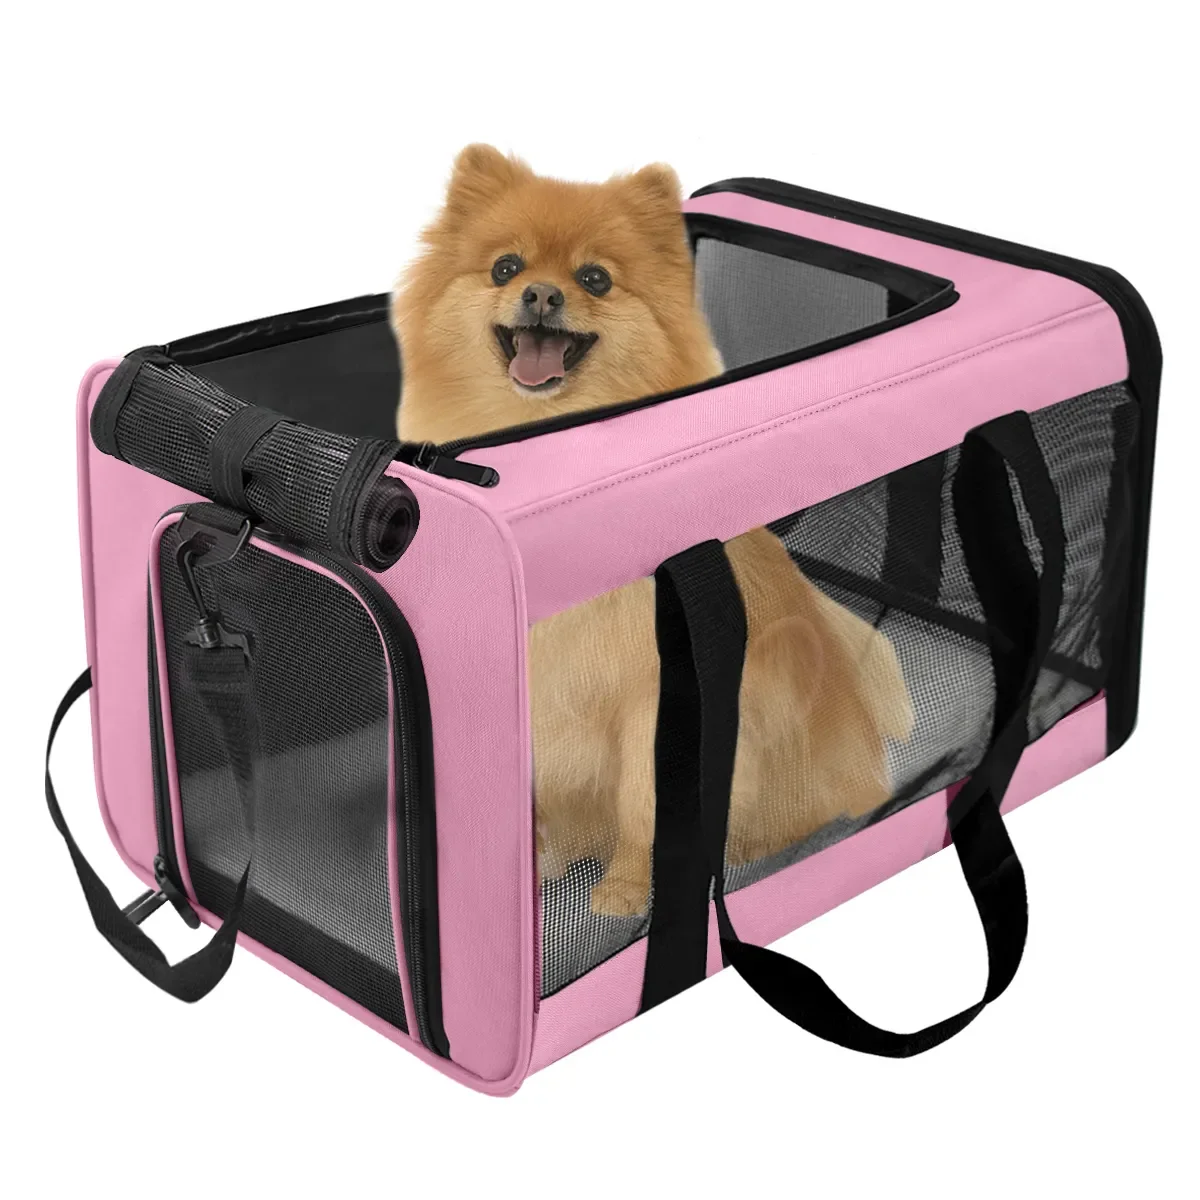 

Сумка-переноска для собак, переносной рюкзак с сетчатым окошком, для перевозки домашних питомцев